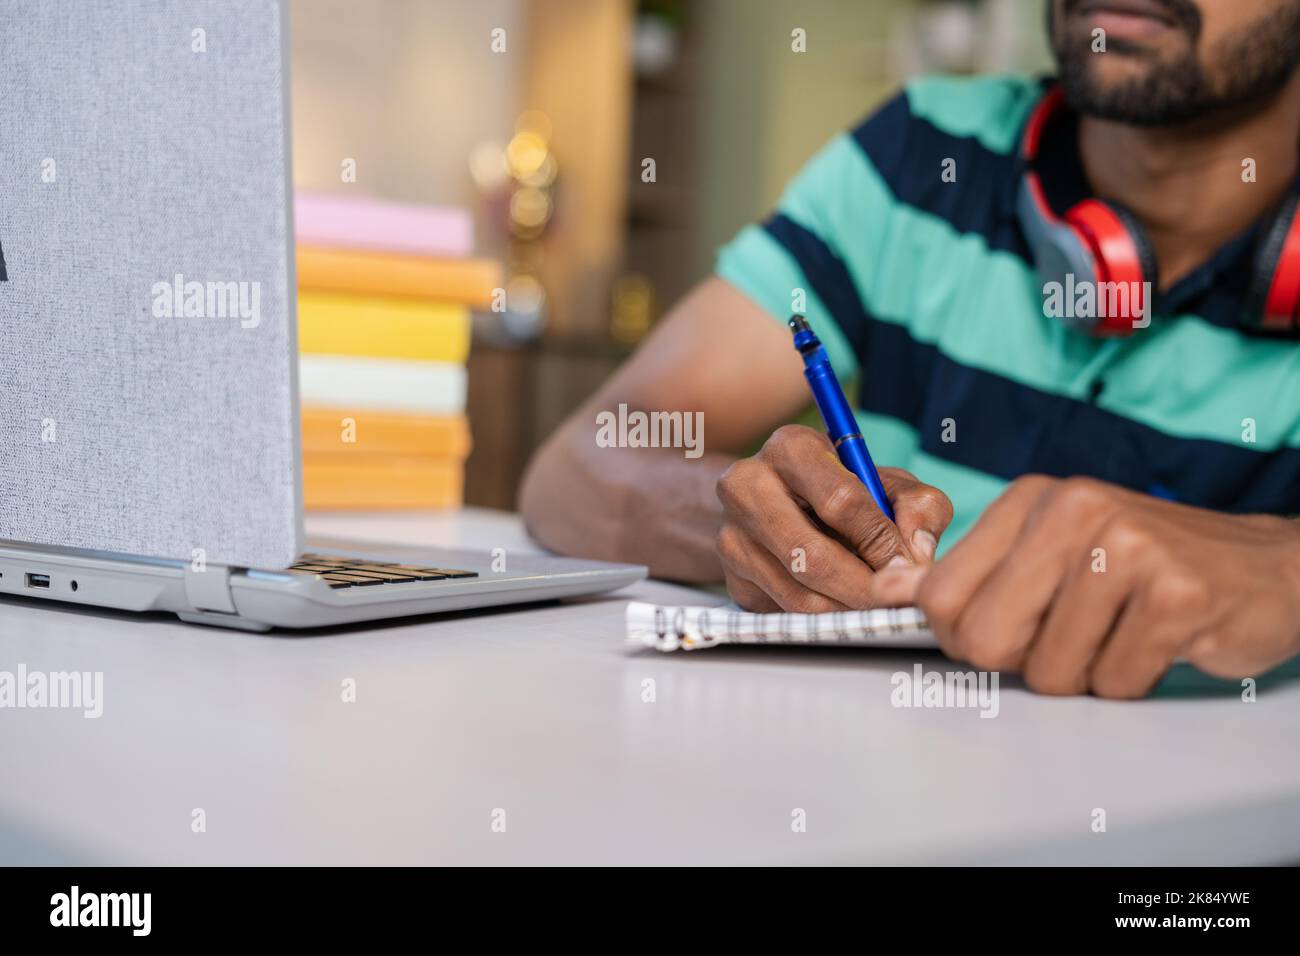 Immagine ravvicinata dell'uomo che utilizza il laptop per scrivere appunti durante la lezione online o il tutorial a casa - concetti di e-learning, istruzione a distanza e Internet. Foto Stock